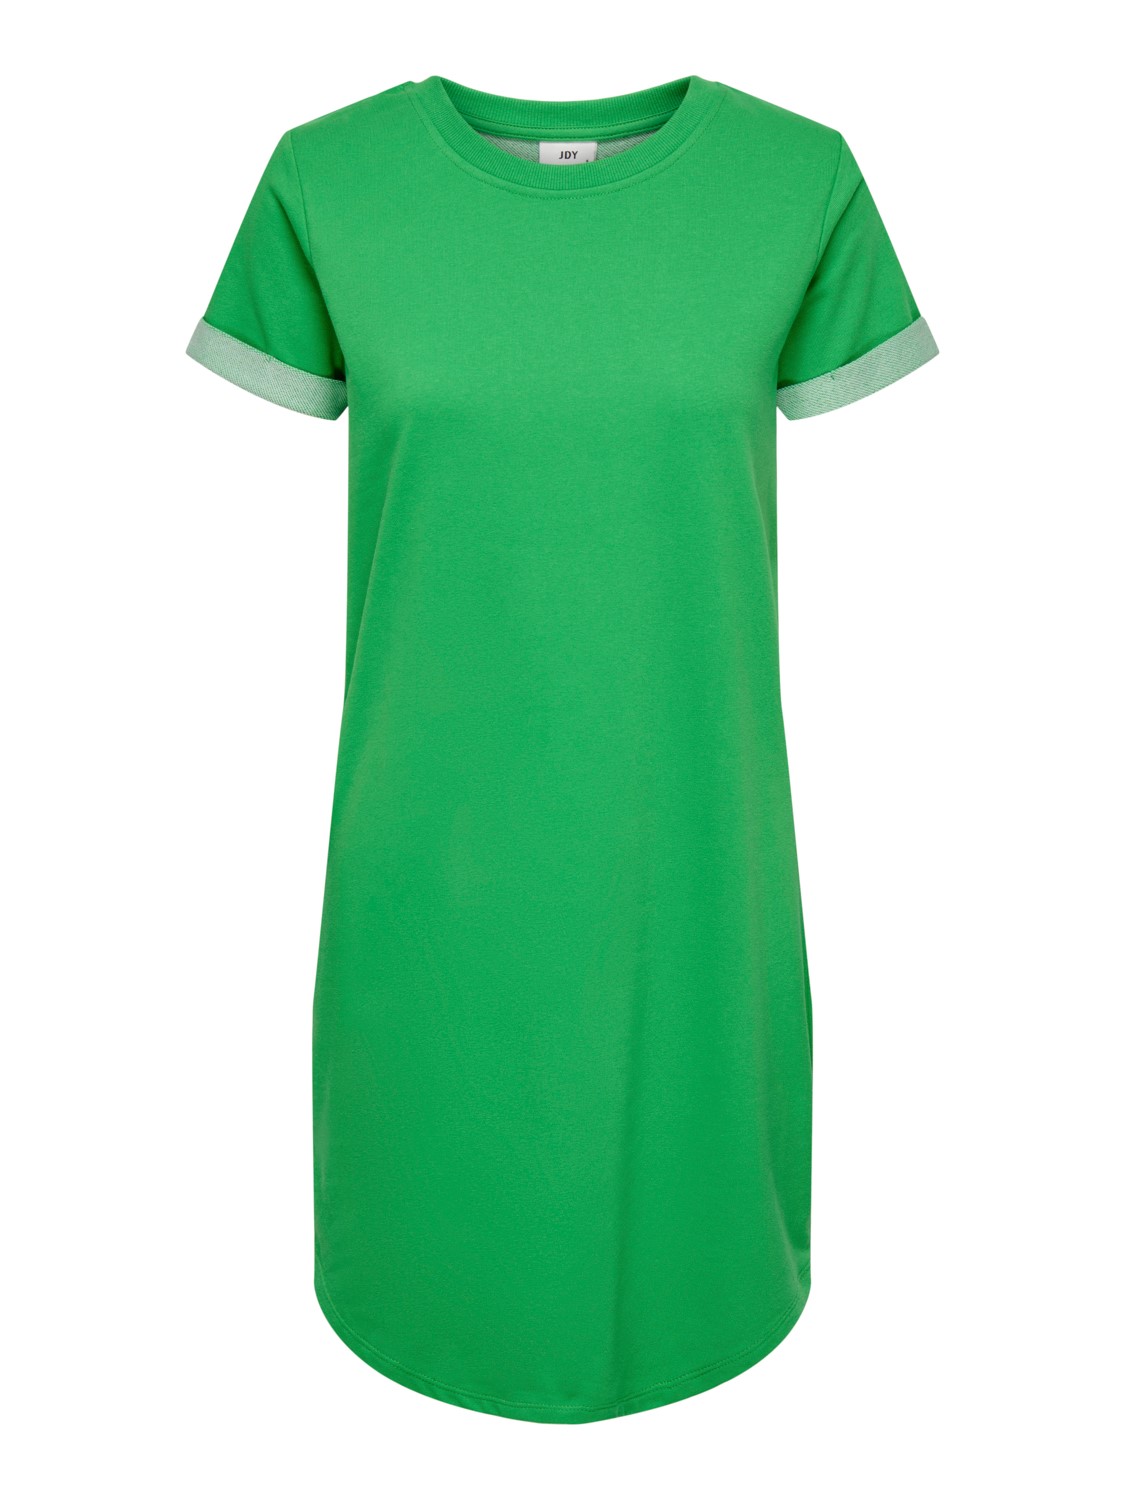 JDy Vivy s/s dress, jersy kjole grønn